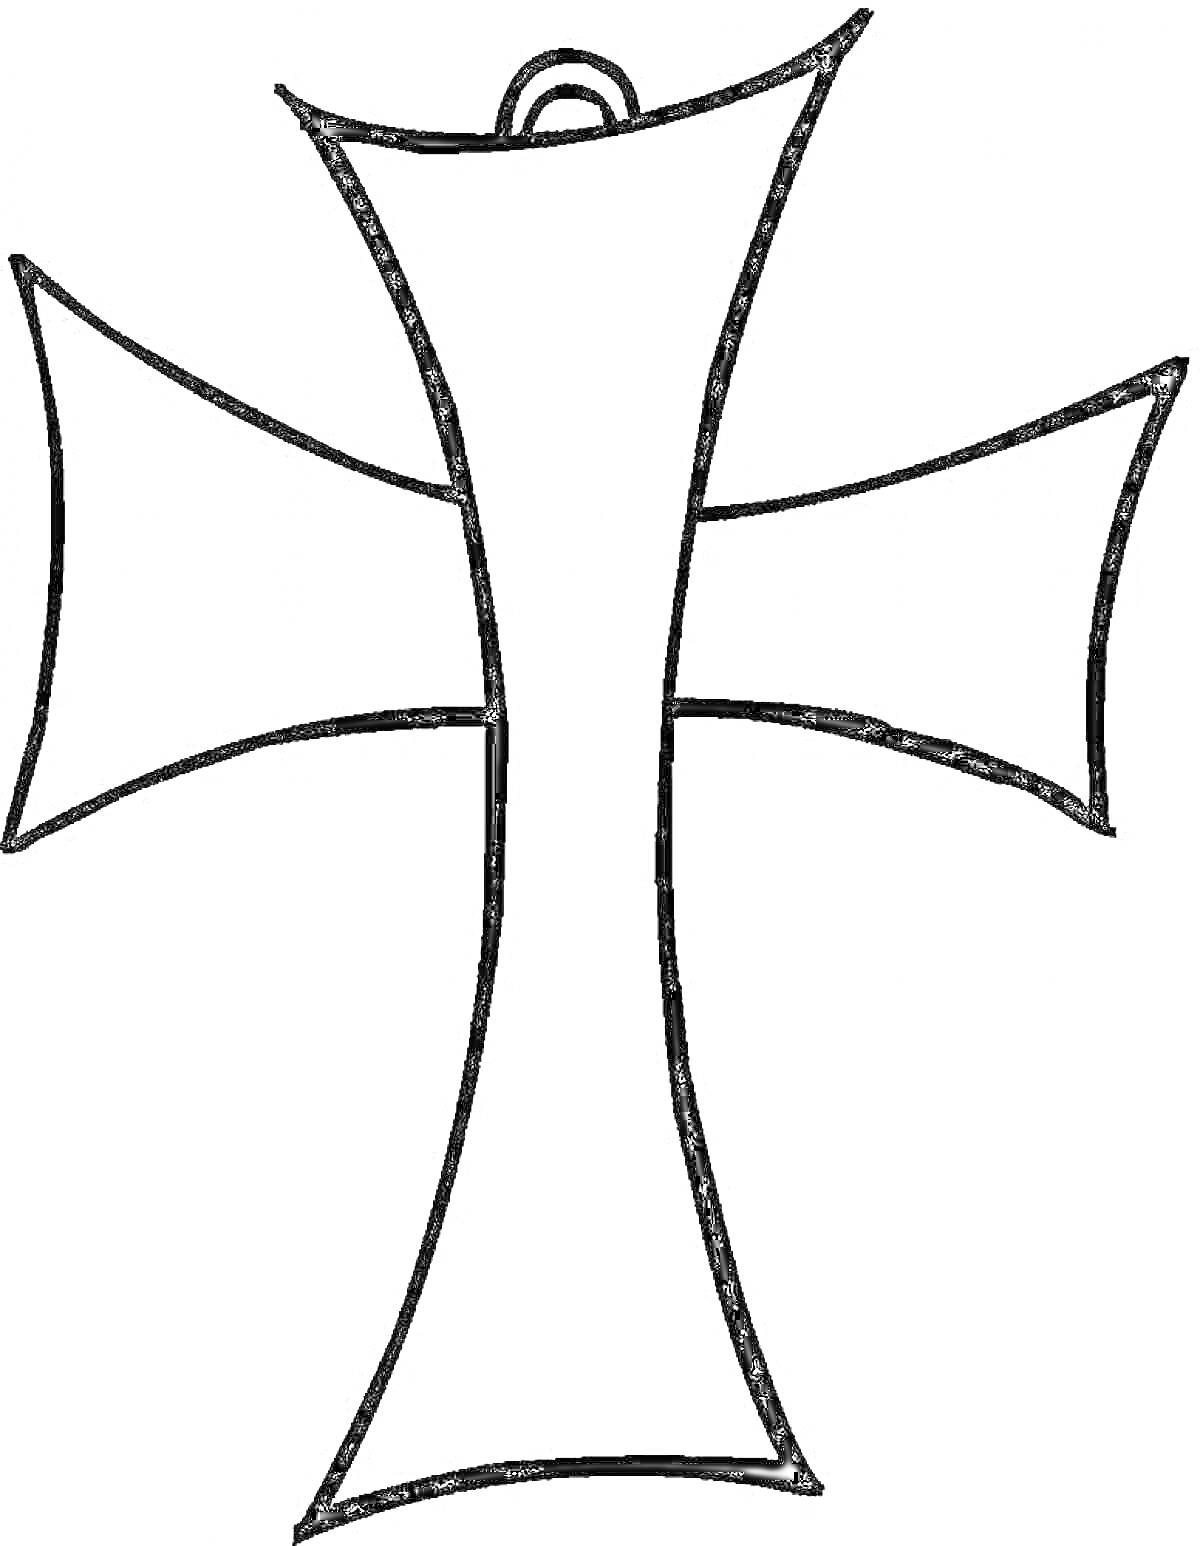 Раскраска крест с четырьмя расширяющимися концами и ушком в верхней части